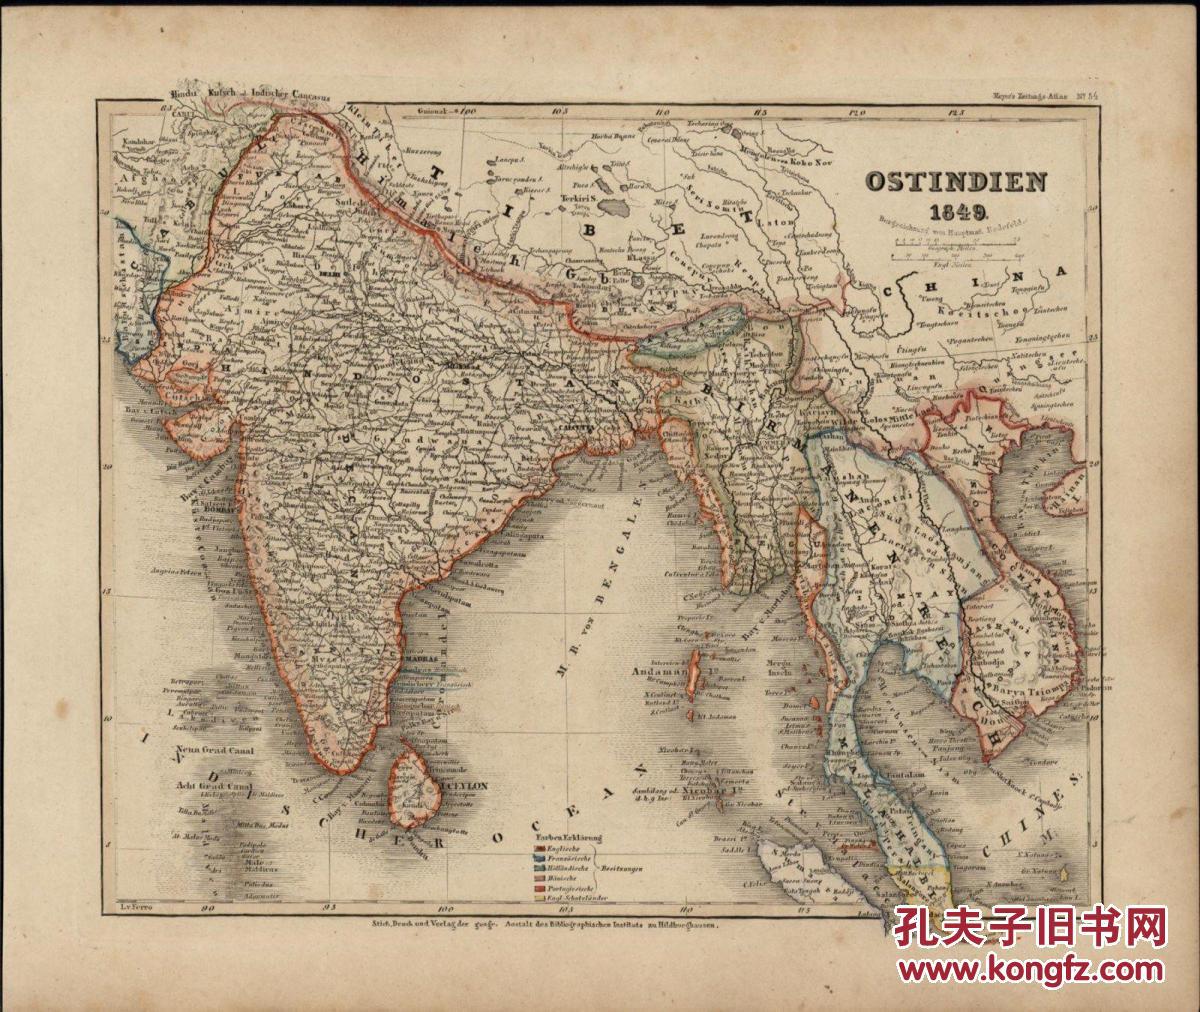 东南亚地图:中国,越南,菲律宾等 / 南海属于中国证明/1849 年/meyer绘图片